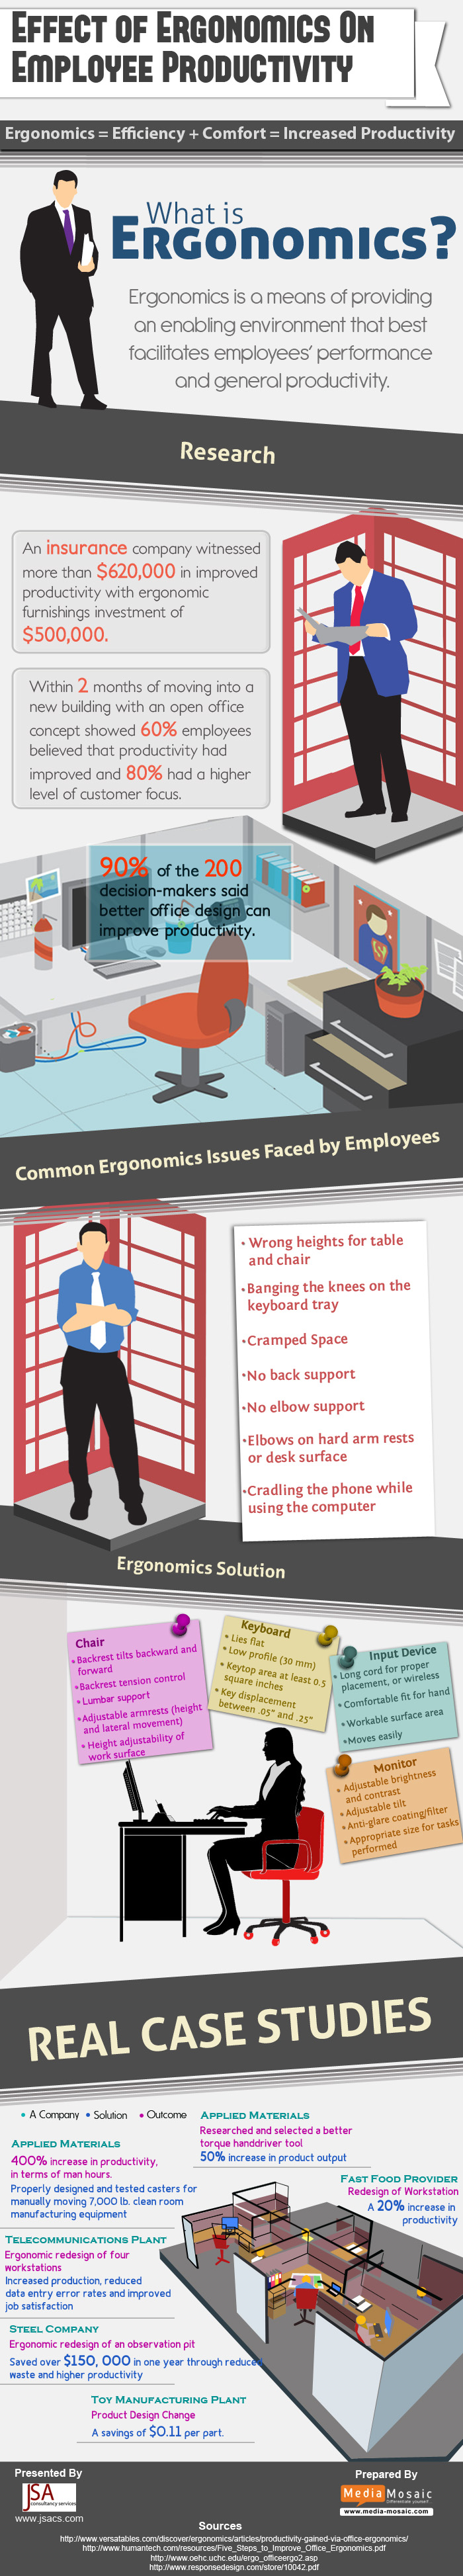 ergonomics-infographic